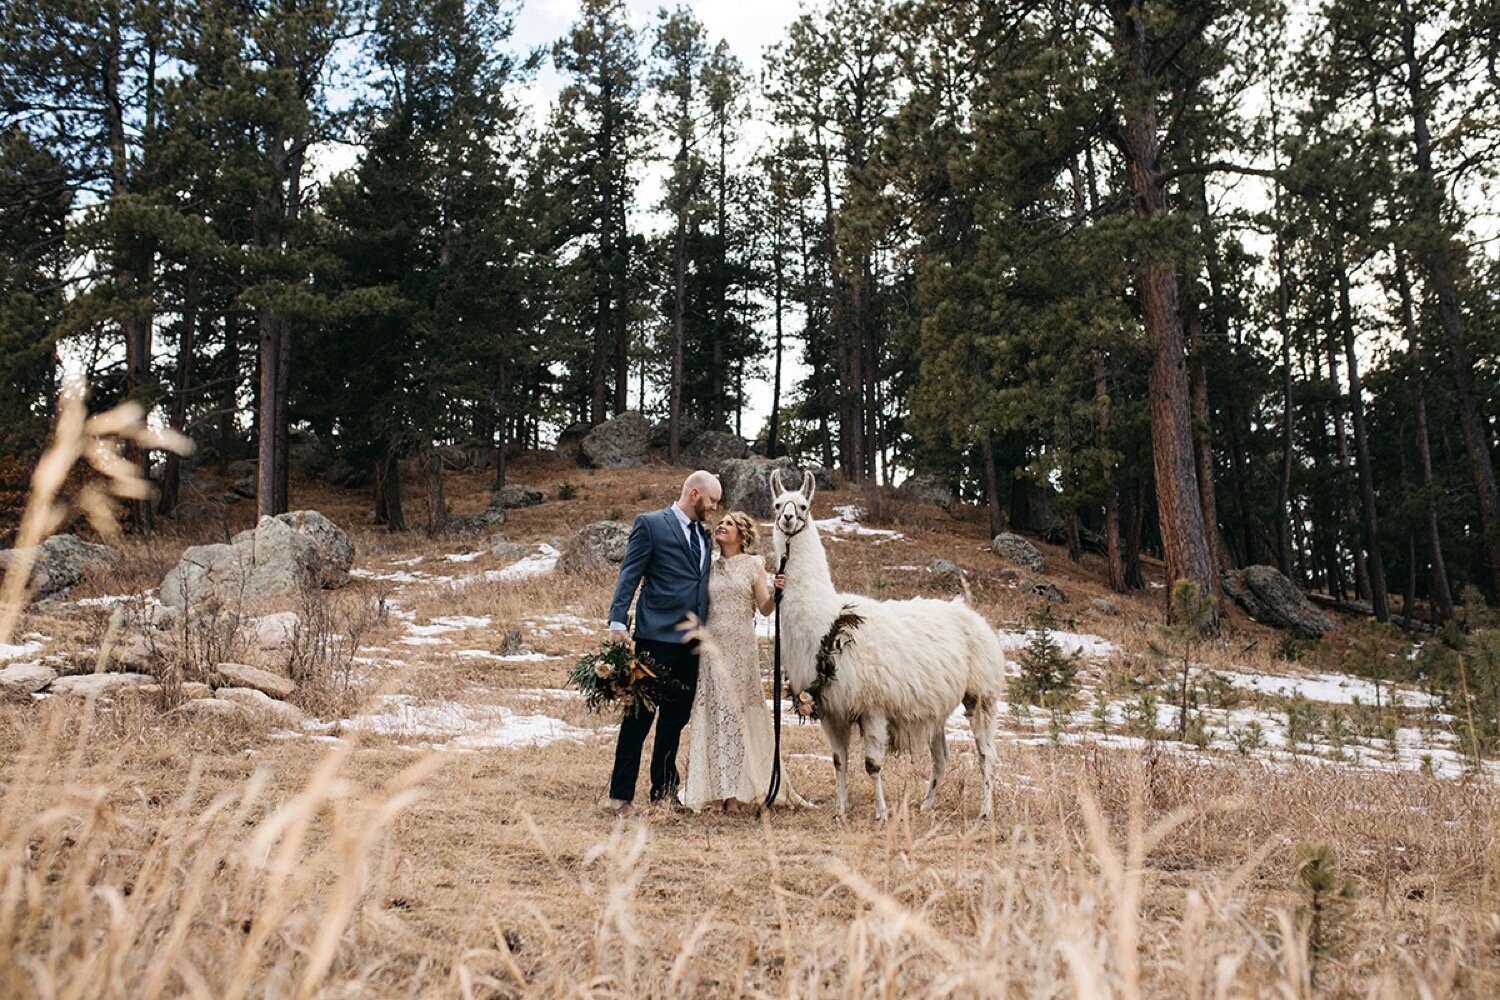  Colorado Springs Wedding, Colorado Wedding Planner, Colorado Wedding Llamas, Younger Ranch, Colorado Barn Wedding, Wedding Planning, Wedding Inspiration, Wedding Ideas, Llama Wedding, Farm Wedding, Barn Wedding, Rustic Wedding, Wedding Photography, 